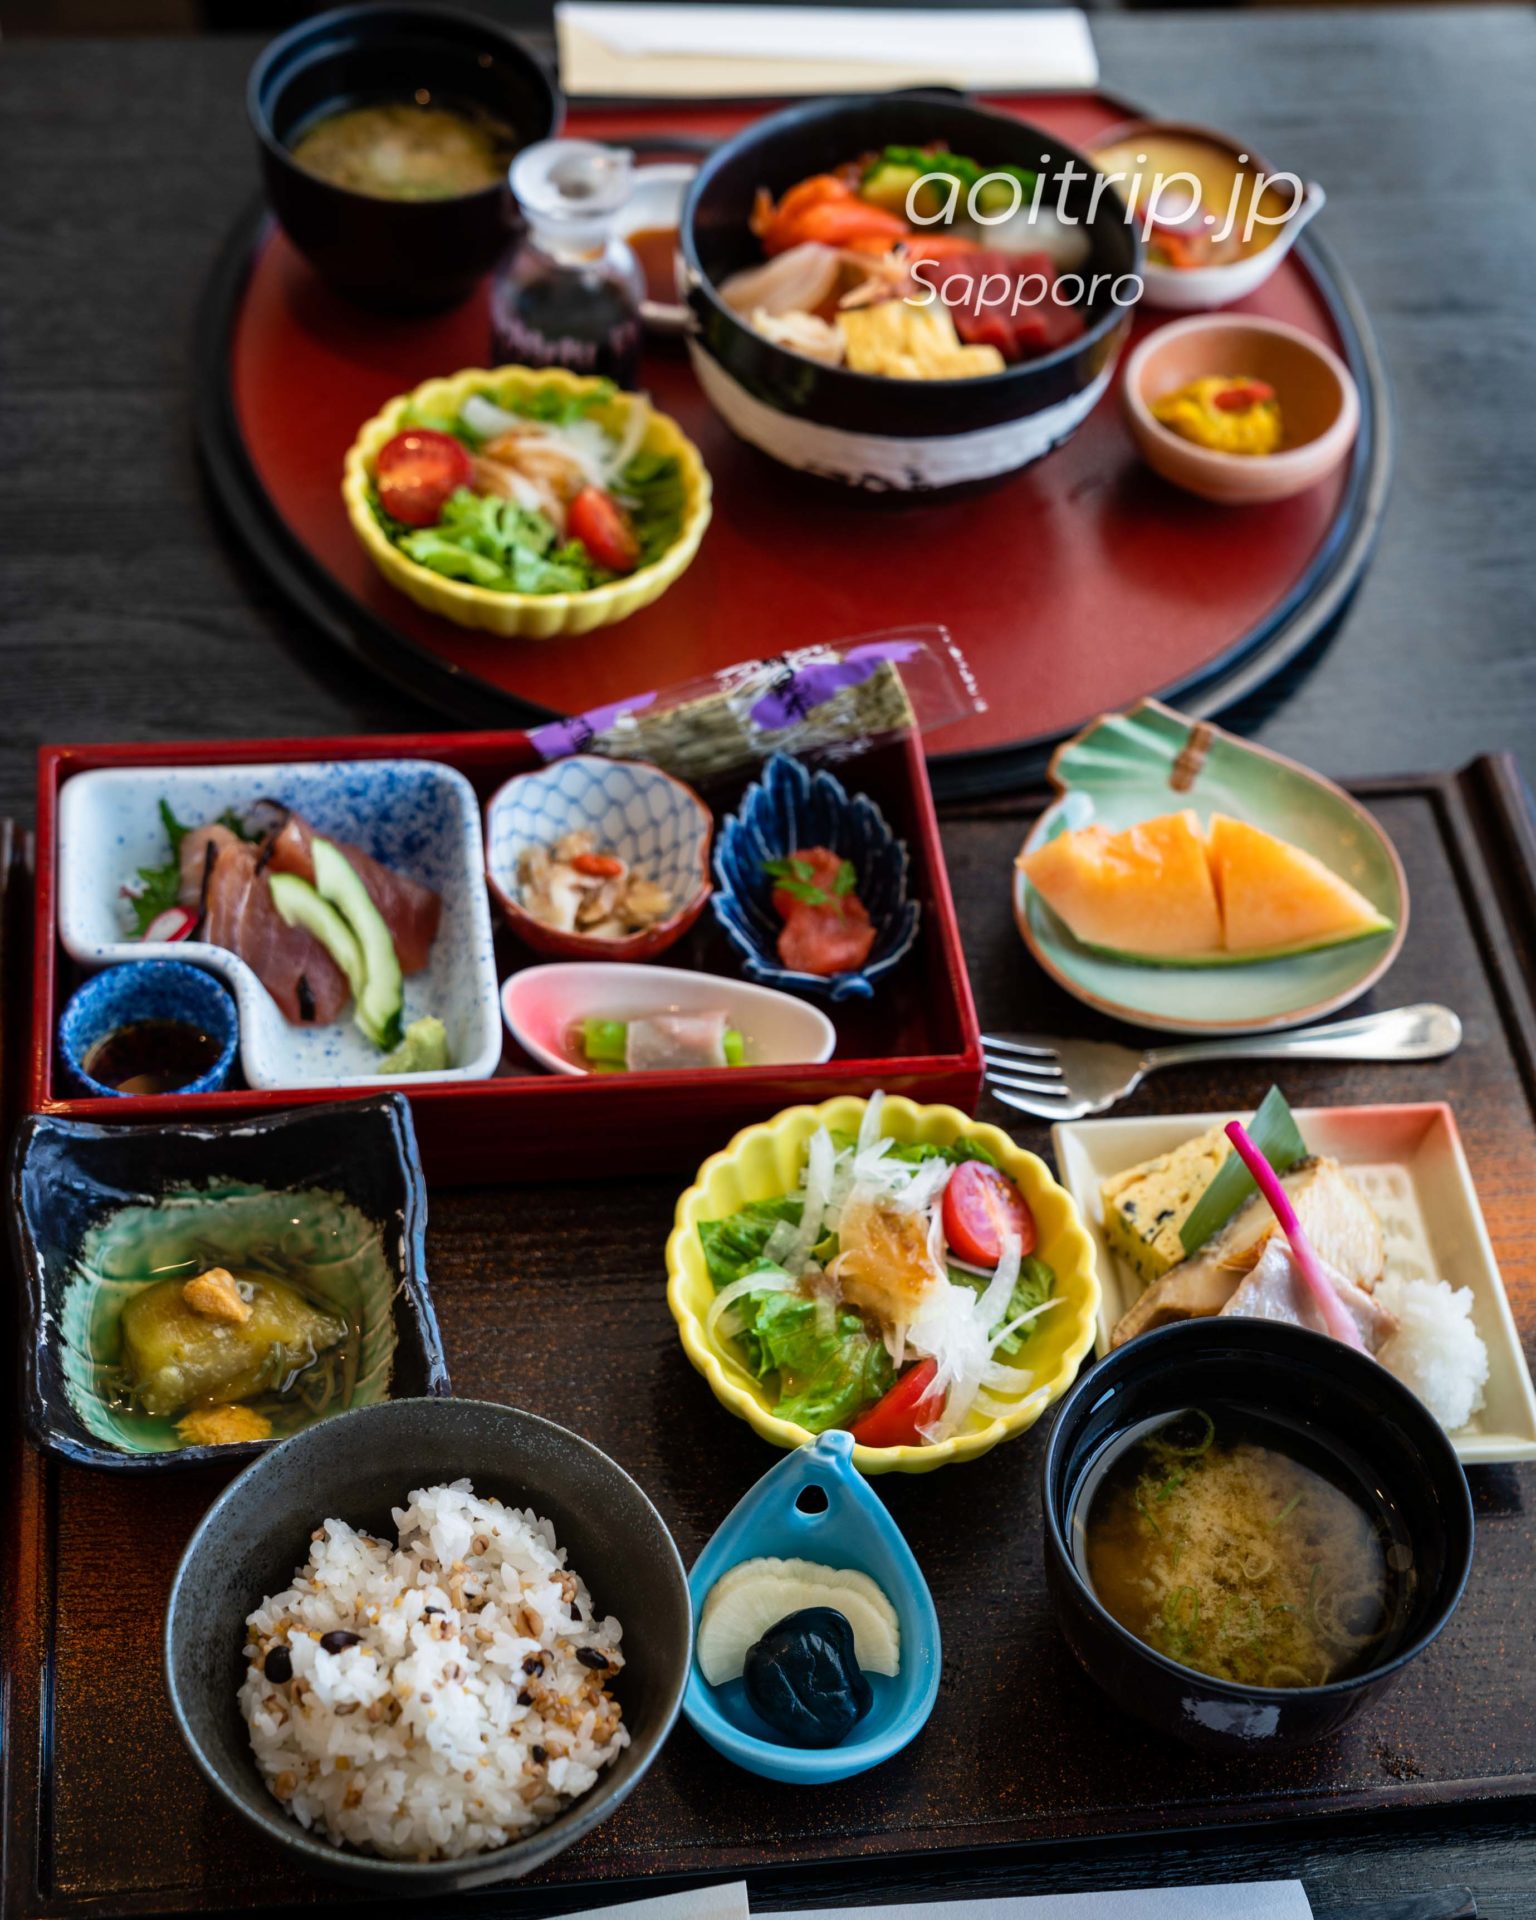 JRタワーホテル日航札幌の35Fレストラン丹頂の朝食